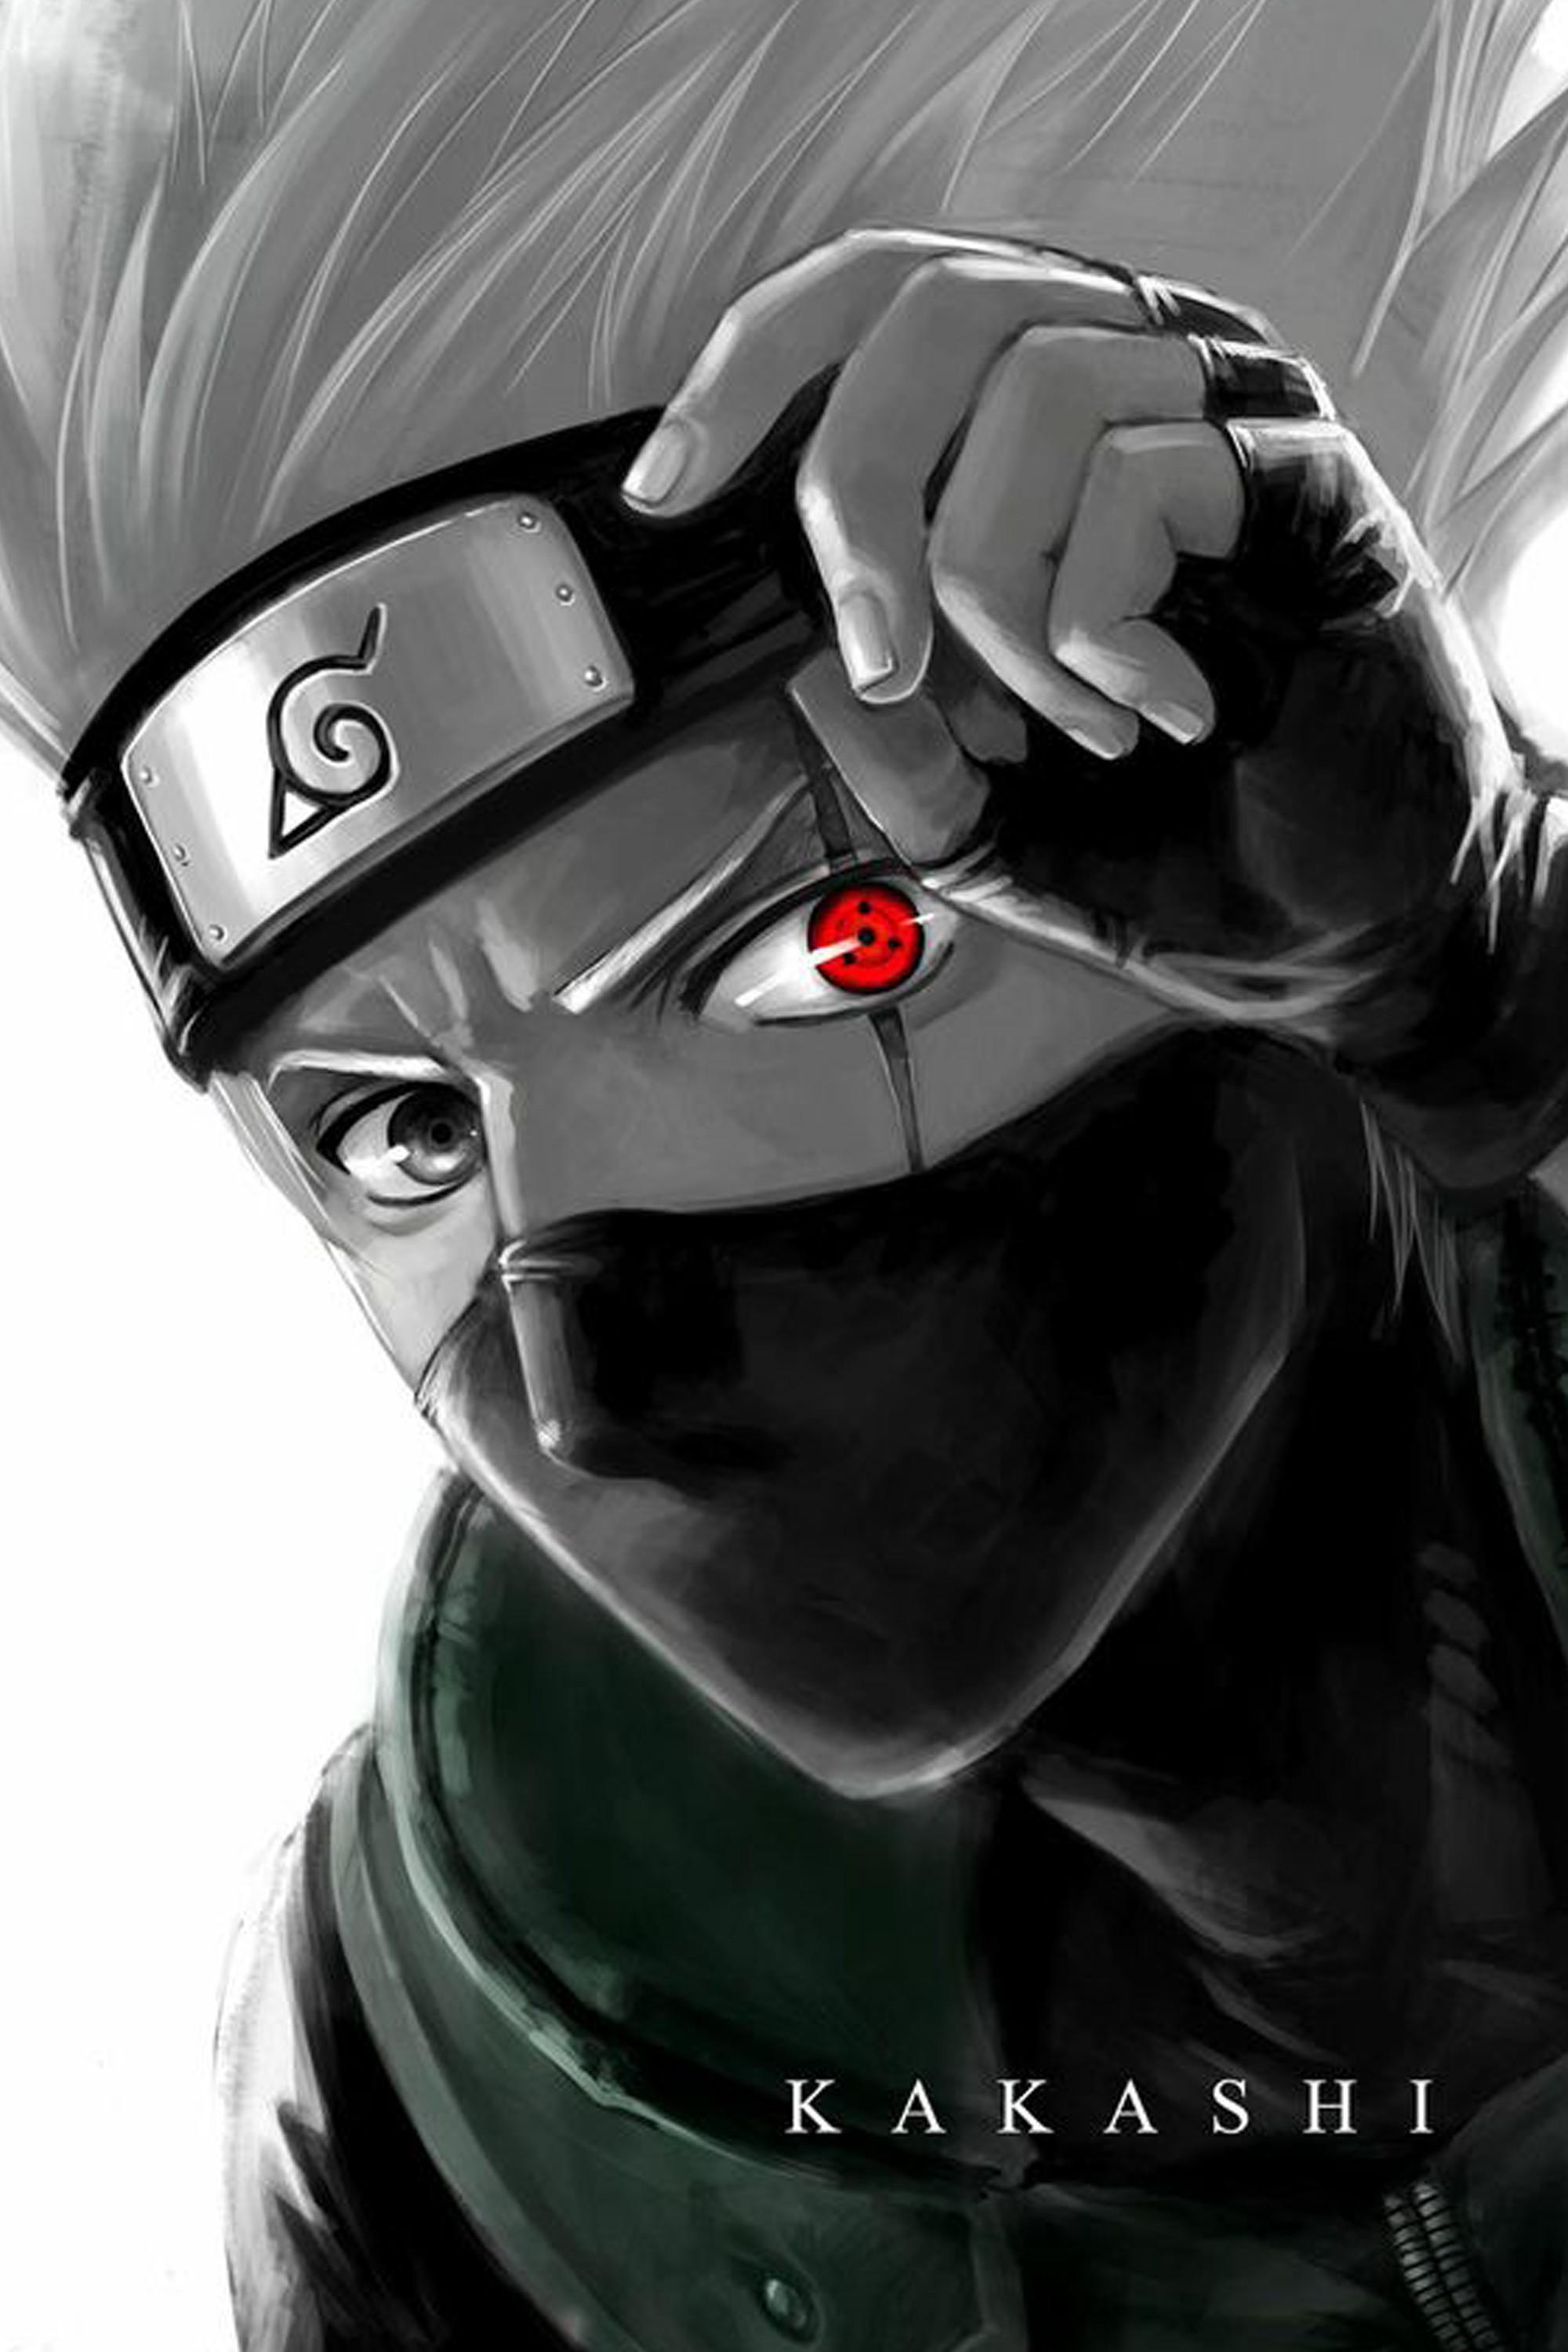 Những bức ảnh về Kakashi trong Naruto được vẽ bằng chì đẹp đến ngỡ ngàng |  Naruto uzumaki, Kakashi, Naruto